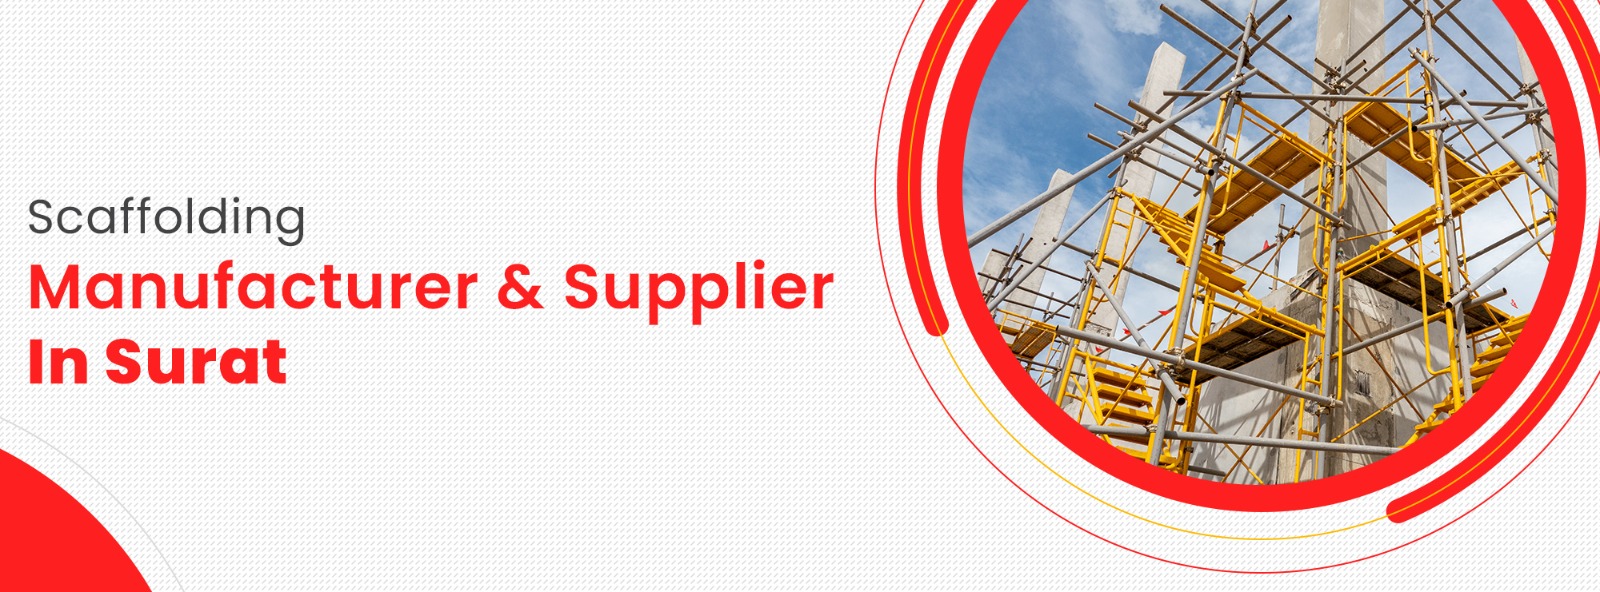 Scaffolding Manufacturer & Supllier In Surat